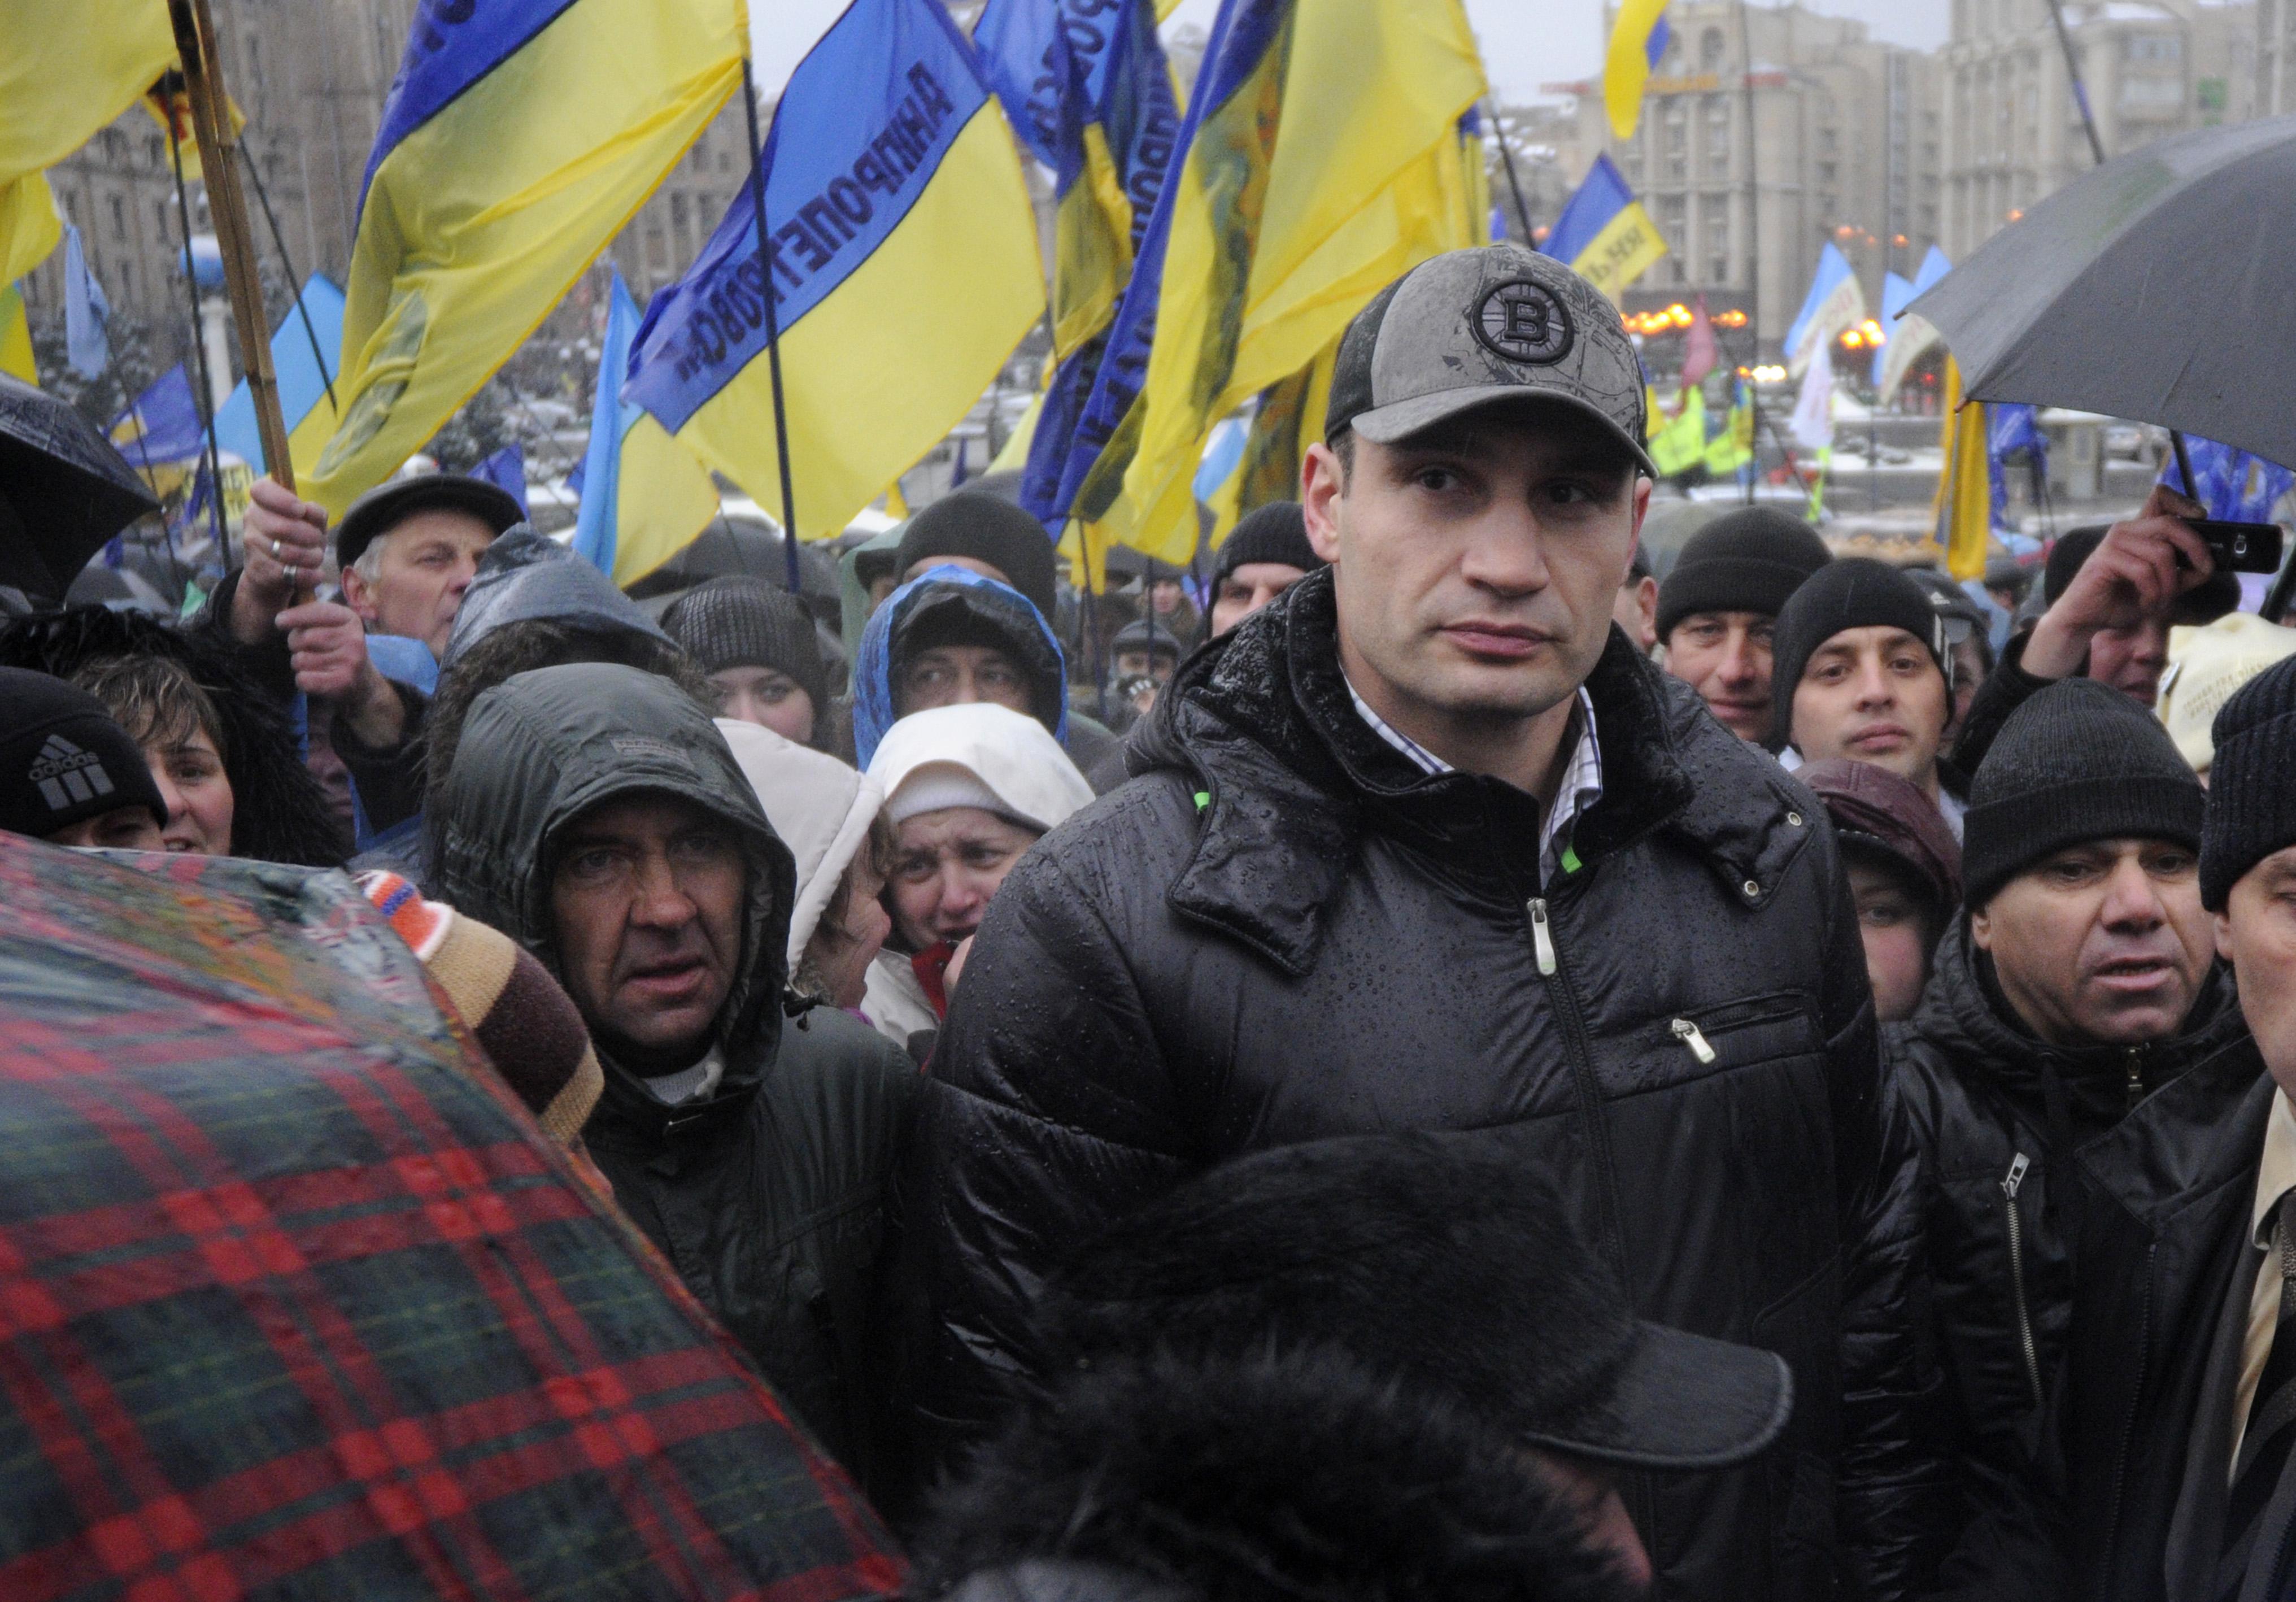 Vitali Klitschko leder partiet UDAR (Ukrainian Democratic Alliance of Reform). Här demonstrerar han tillsammans med många andra i Kiev.